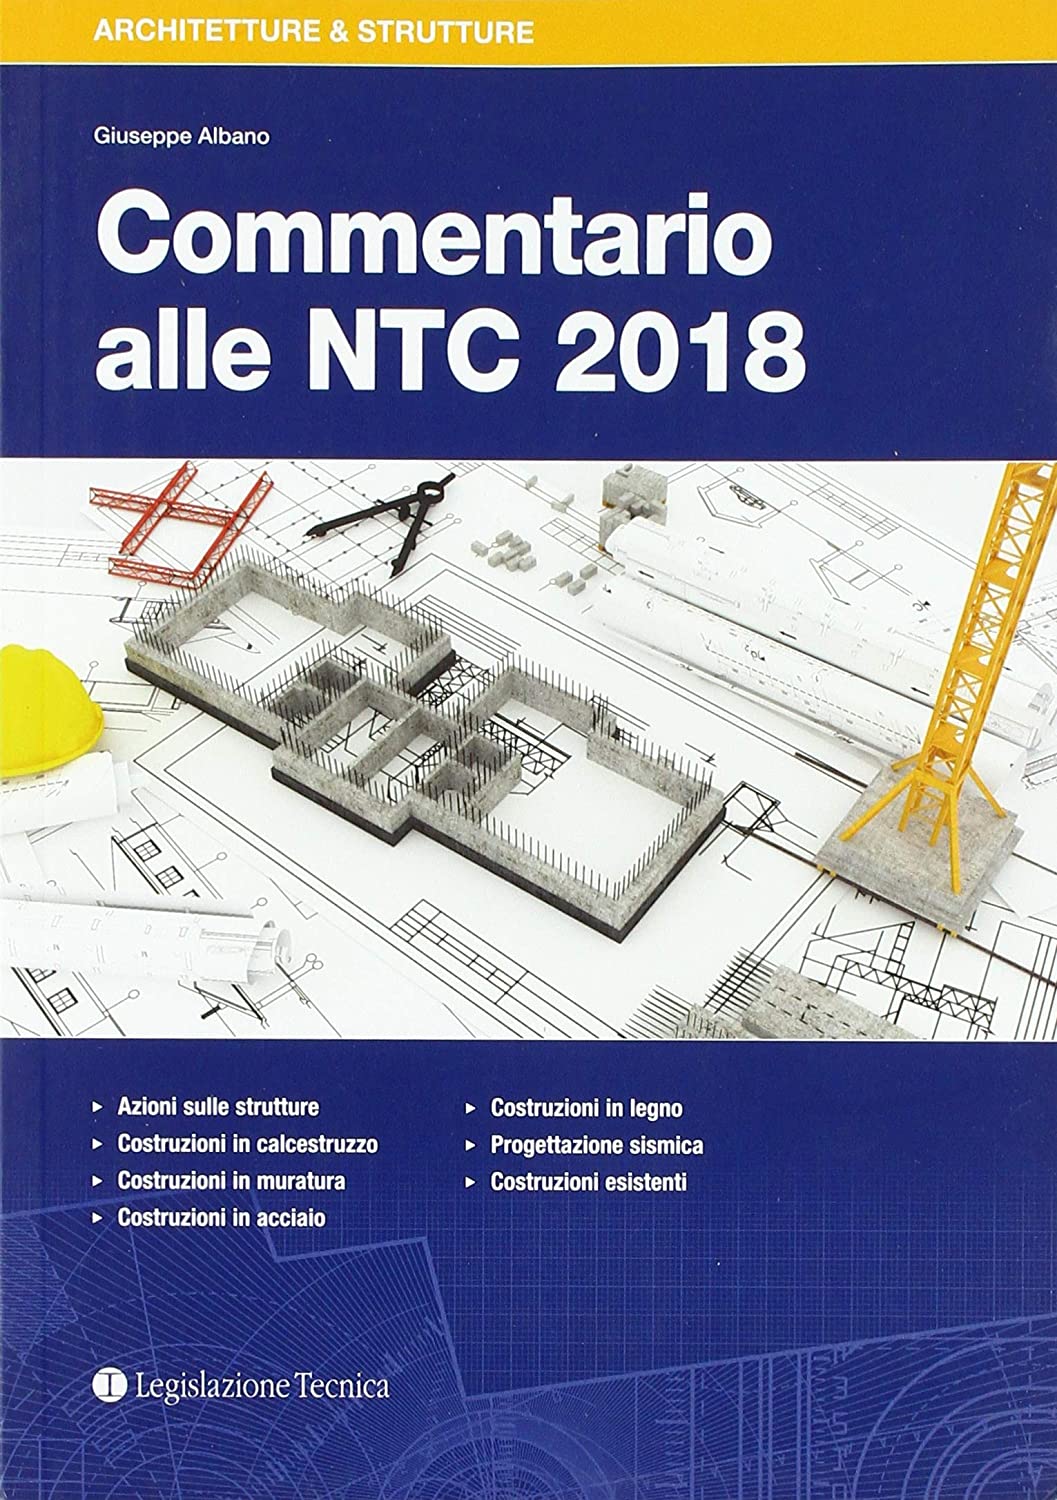 Libri Giuseppe Albano - Commentario Alle NTC 2018 NUOVO SIGILLATO, EDIZIONE DEL 06/03/2017 SUBITO DISPONIBILE